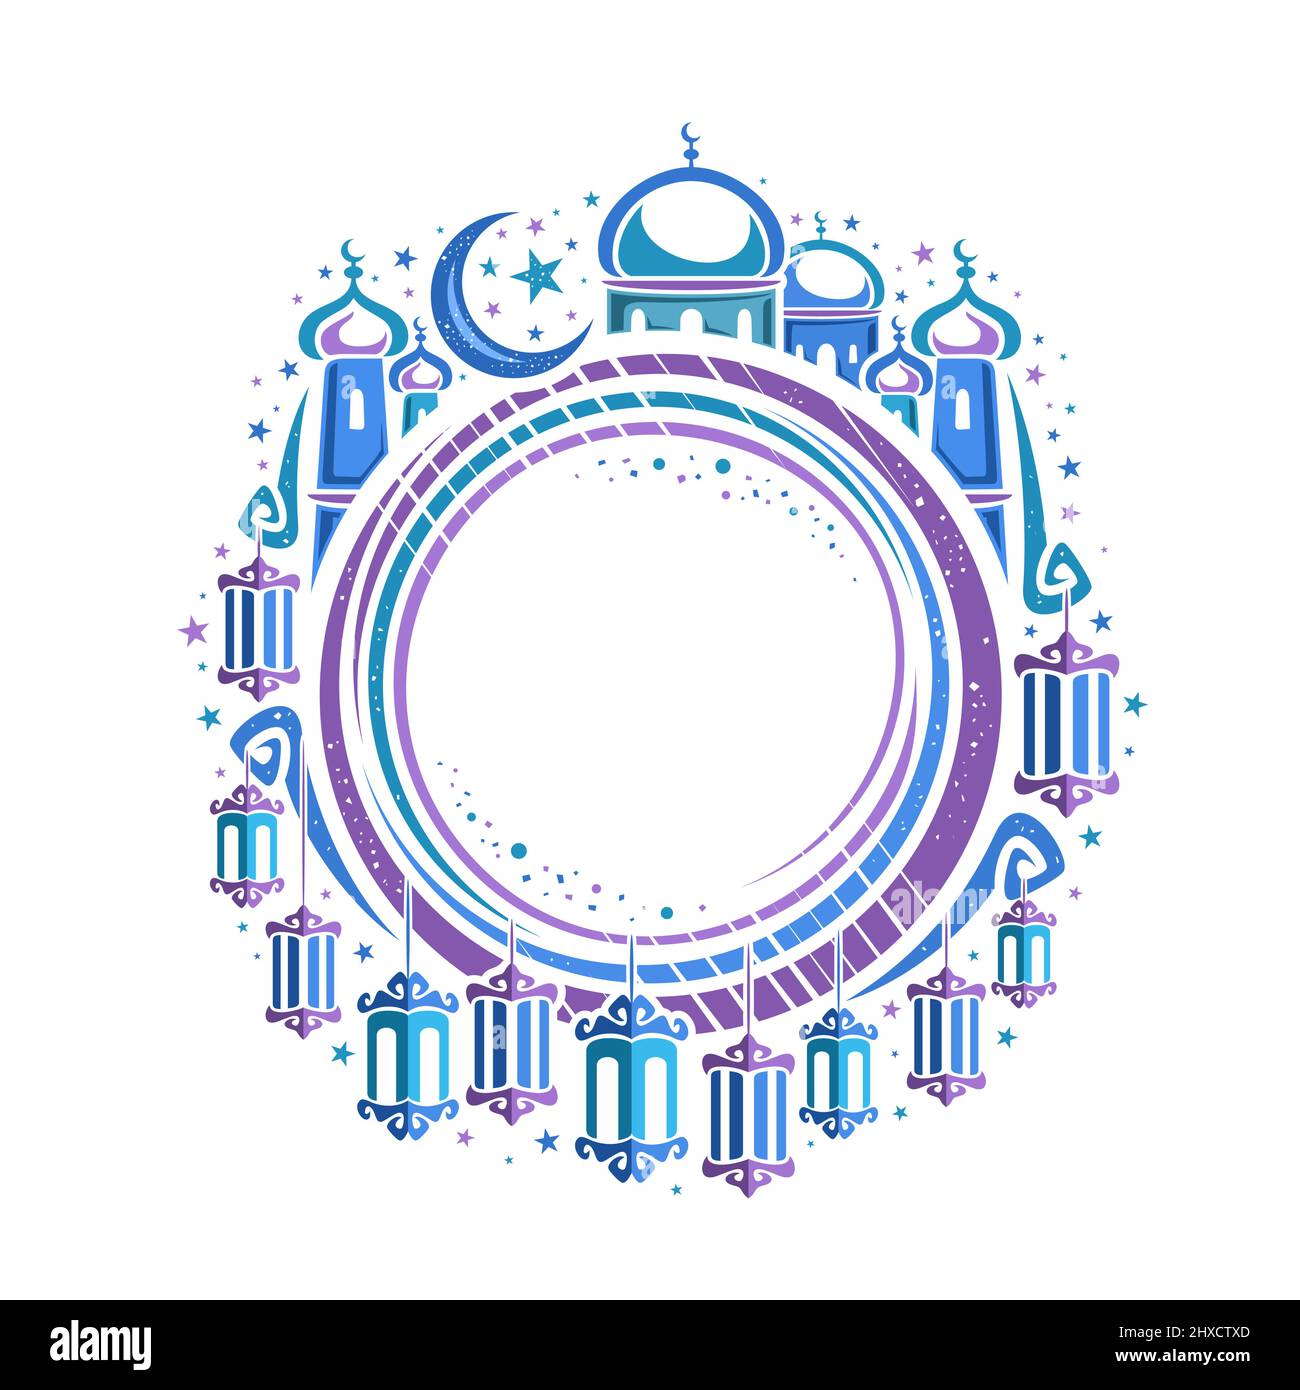 Vektor-Grenze für den Heiligen Monat Ramadan mit Copyspace für Wunschtext, rundes Preisschild mit Illustration von Hängelampen und Halbmond, Masjid mit dom Stock Vektor